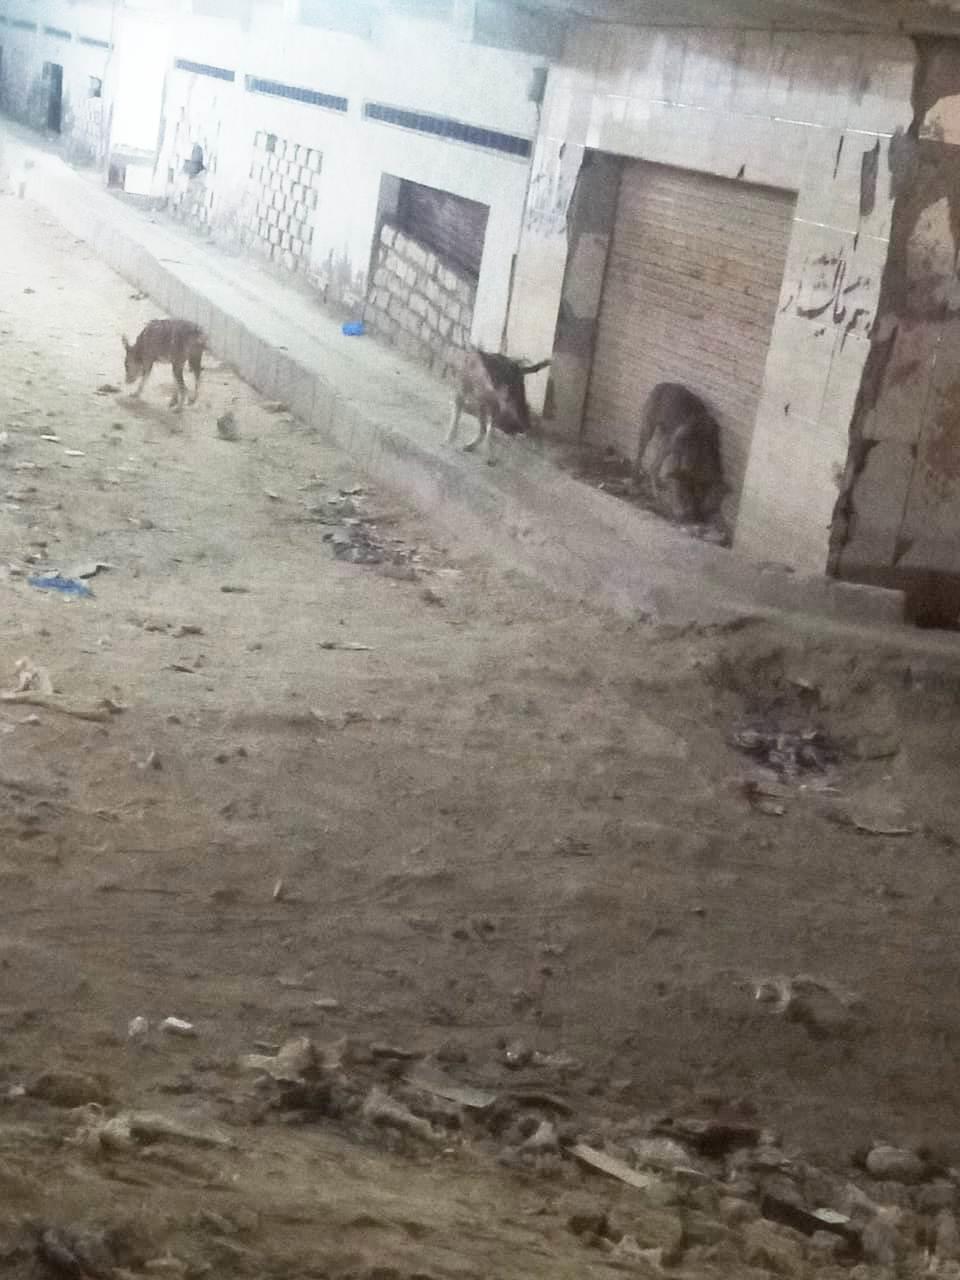 بعد عقر 37 شخصا..حي العجمي يطارد الكلاب الضالة في الإسكندرية| صور